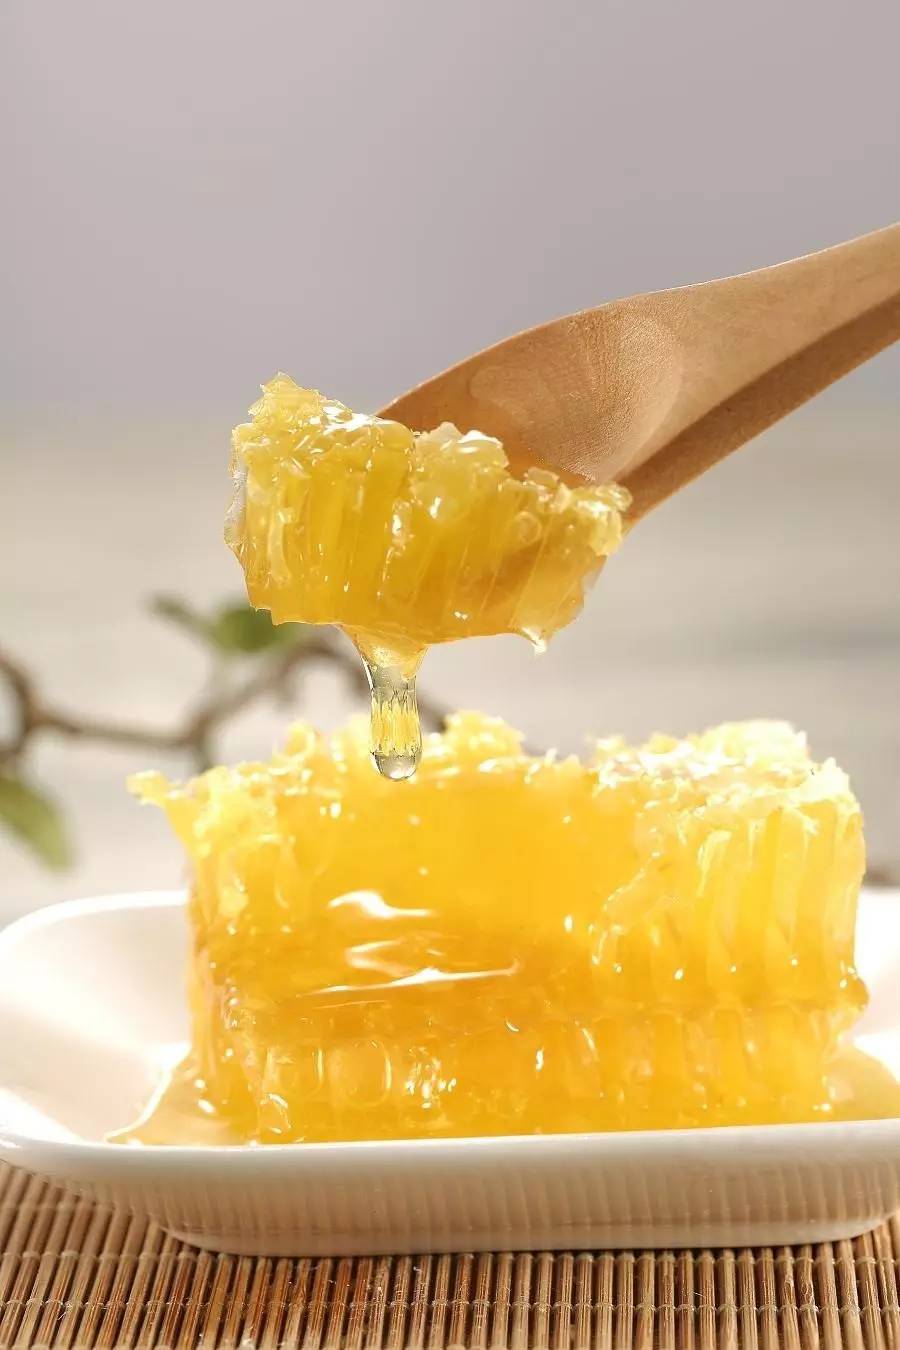 蒸橙子加蜂蜜 菠萝和蜂蜜可以一起吃吗 绿茶能放蜂蜜吗 蜂蜜用温开水 荷兰猪吃蜂蜜吗